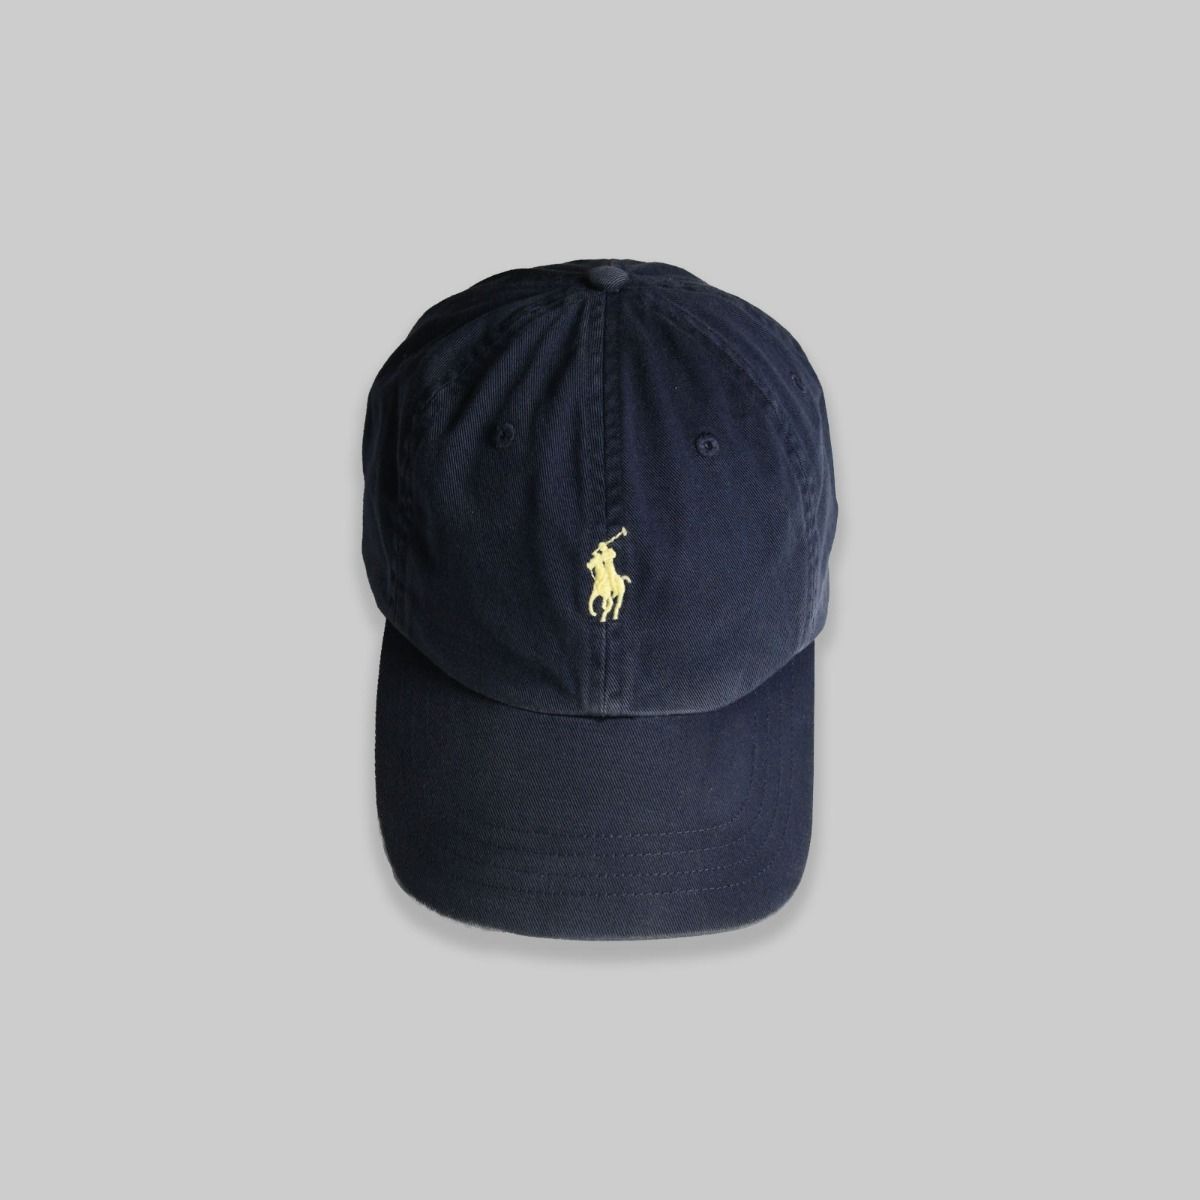 Ralph Lauren Navy Hat